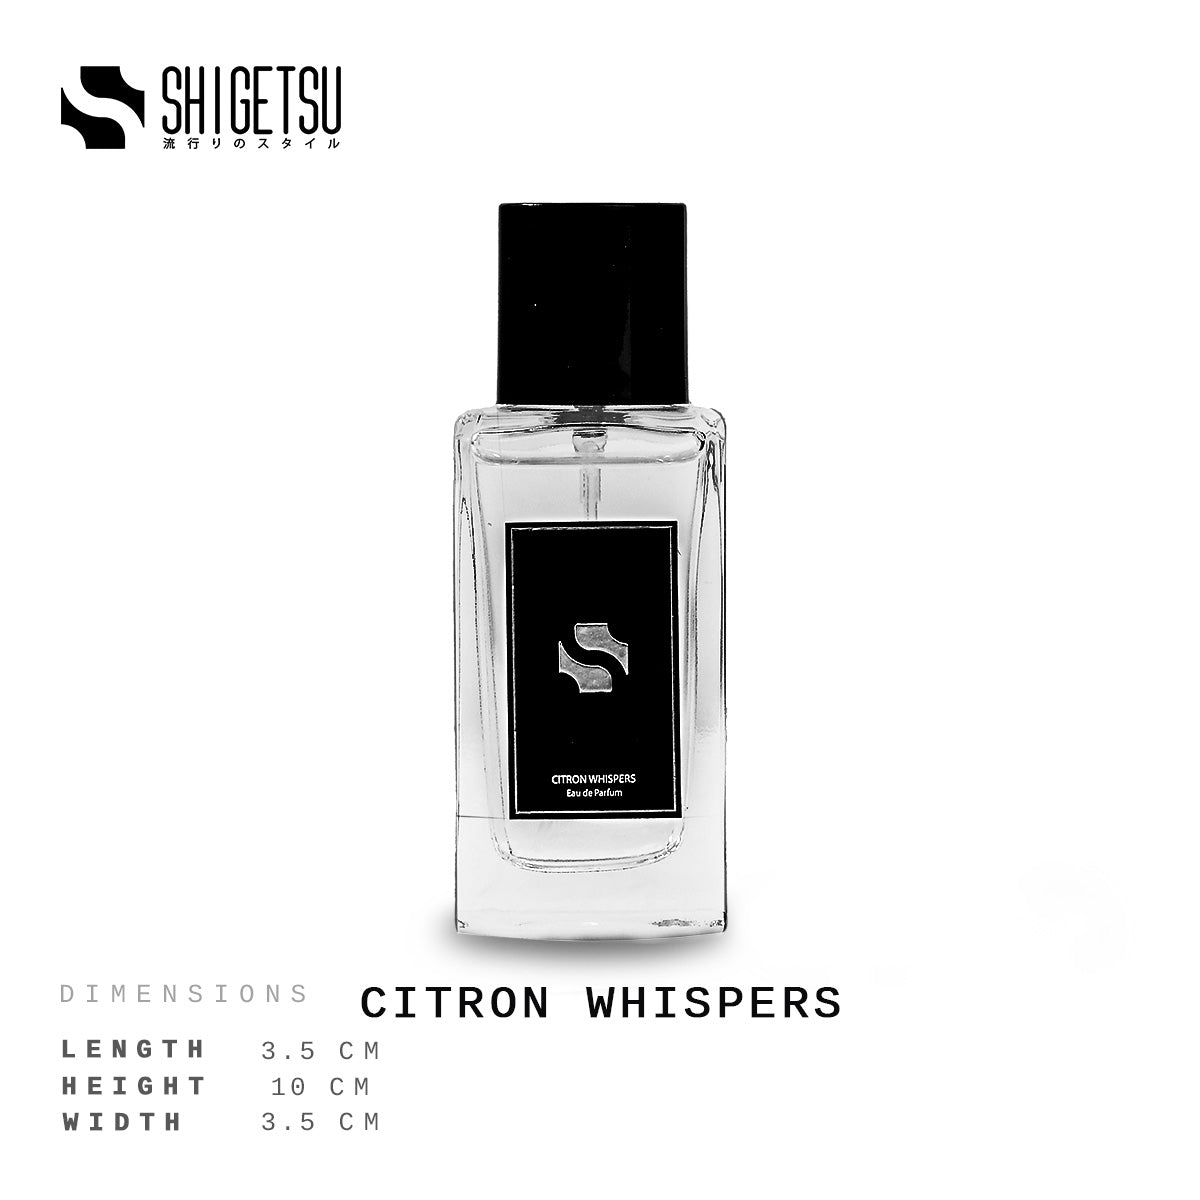 CITRON WHISPERS Oil Based Perfume For Men